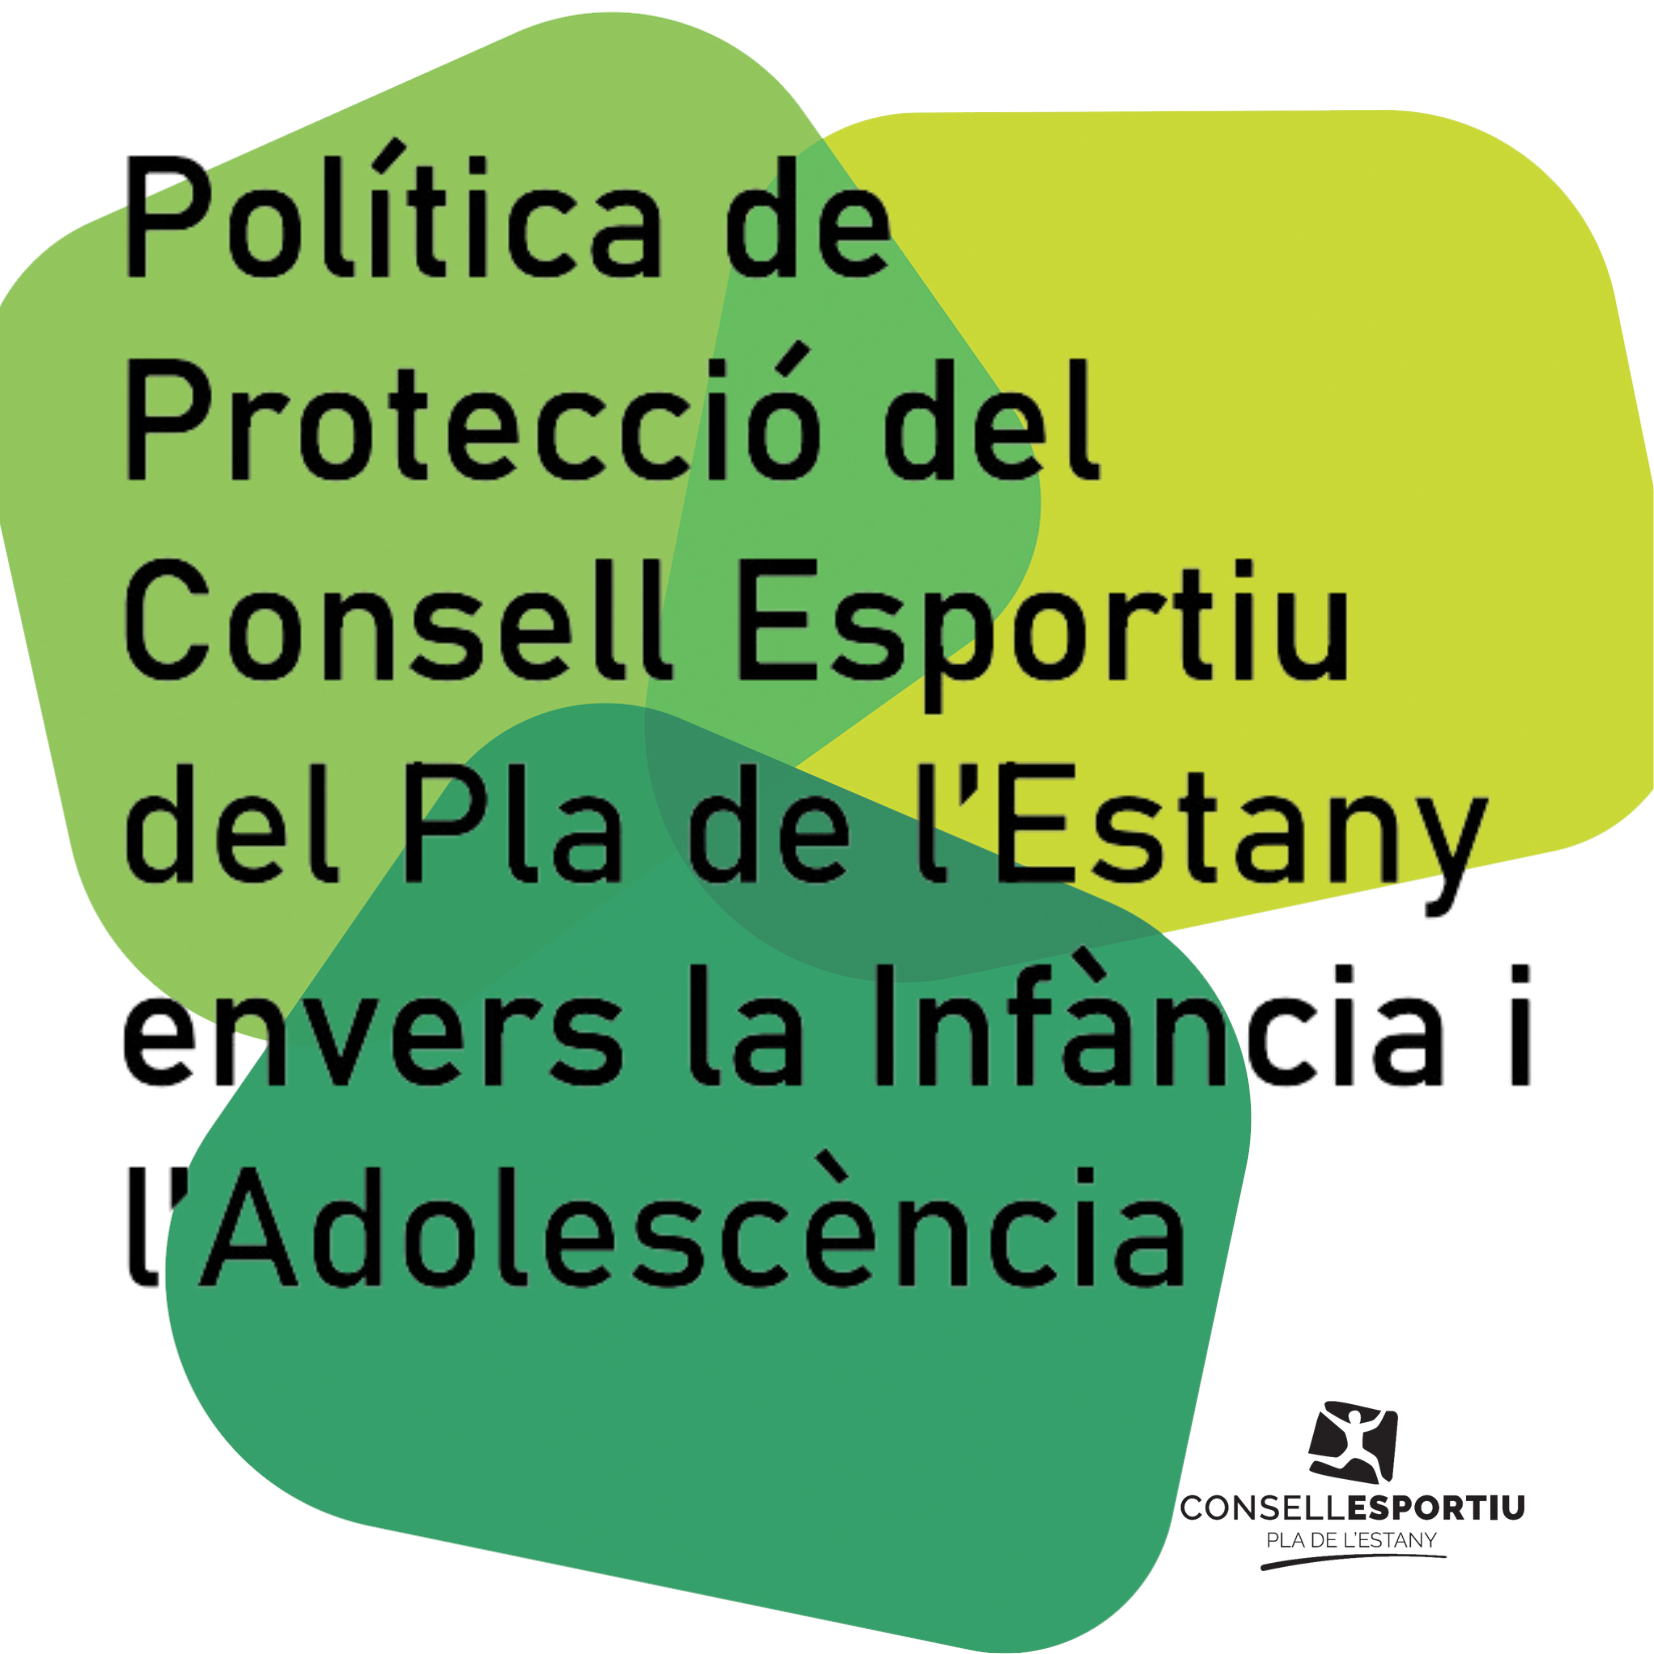 El Consell Esportiu del Pla de l’Estany reforça el seu compromís per garantir espais segurs i protectors envers els drets de la infància i l’adolescència